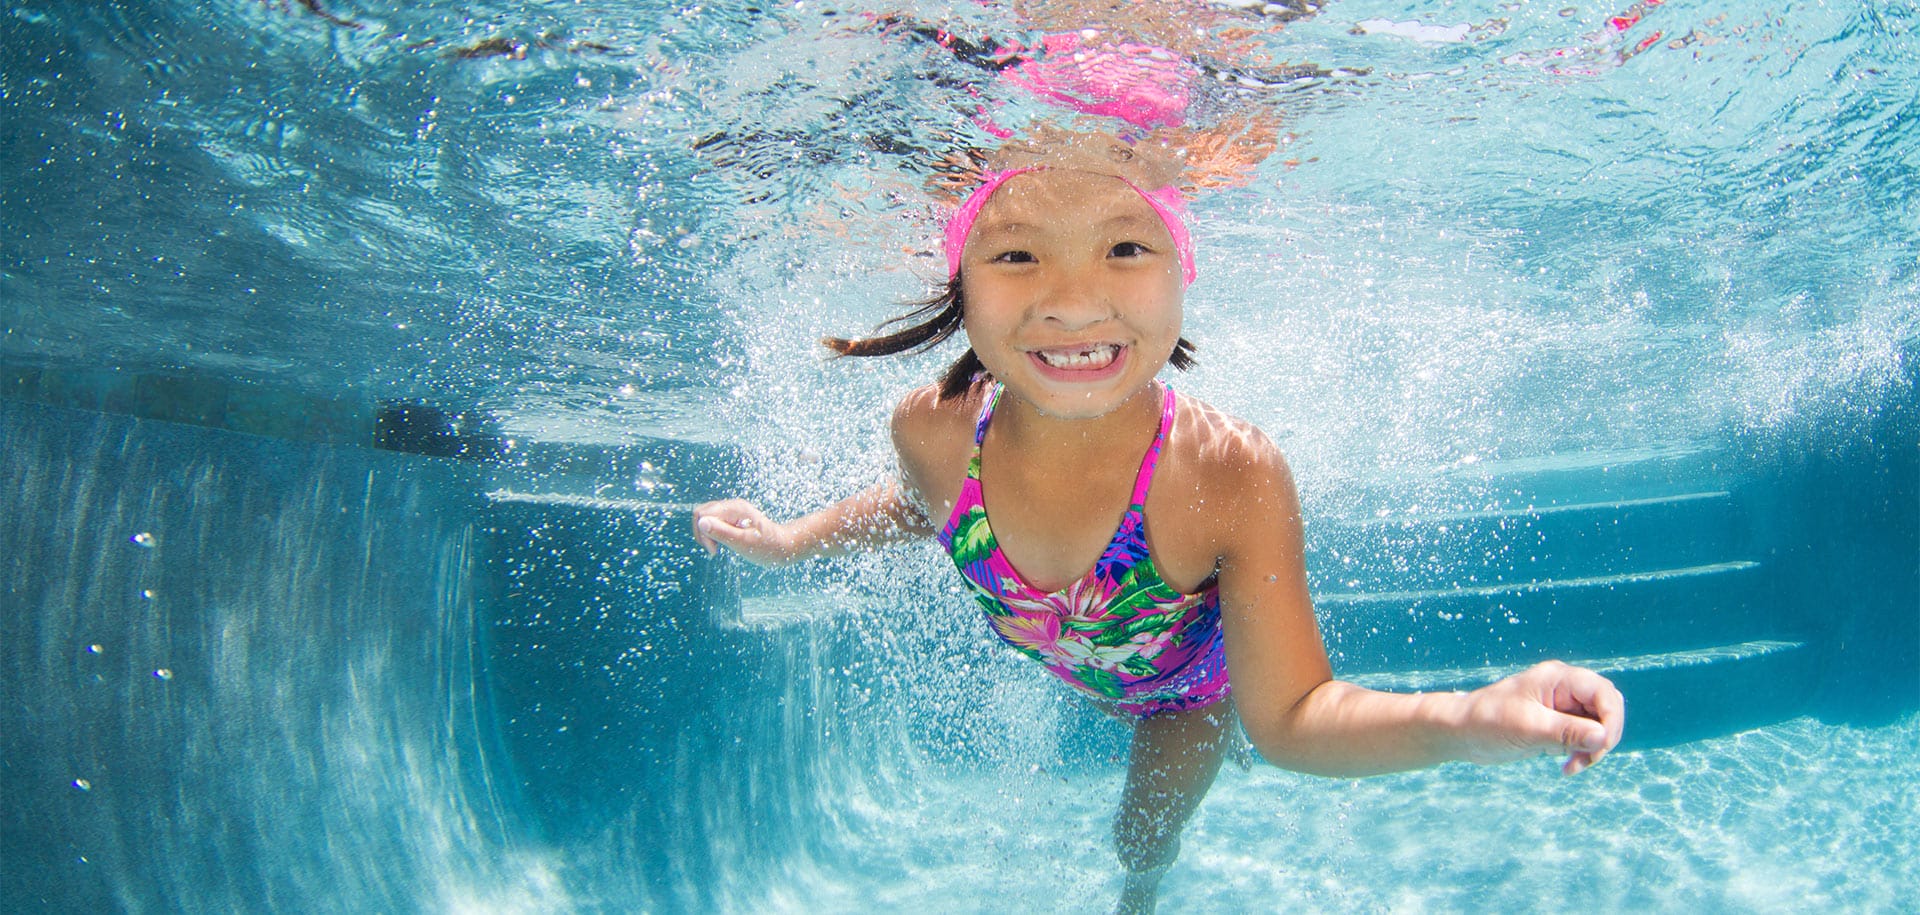 Smiling girl swimming underwater